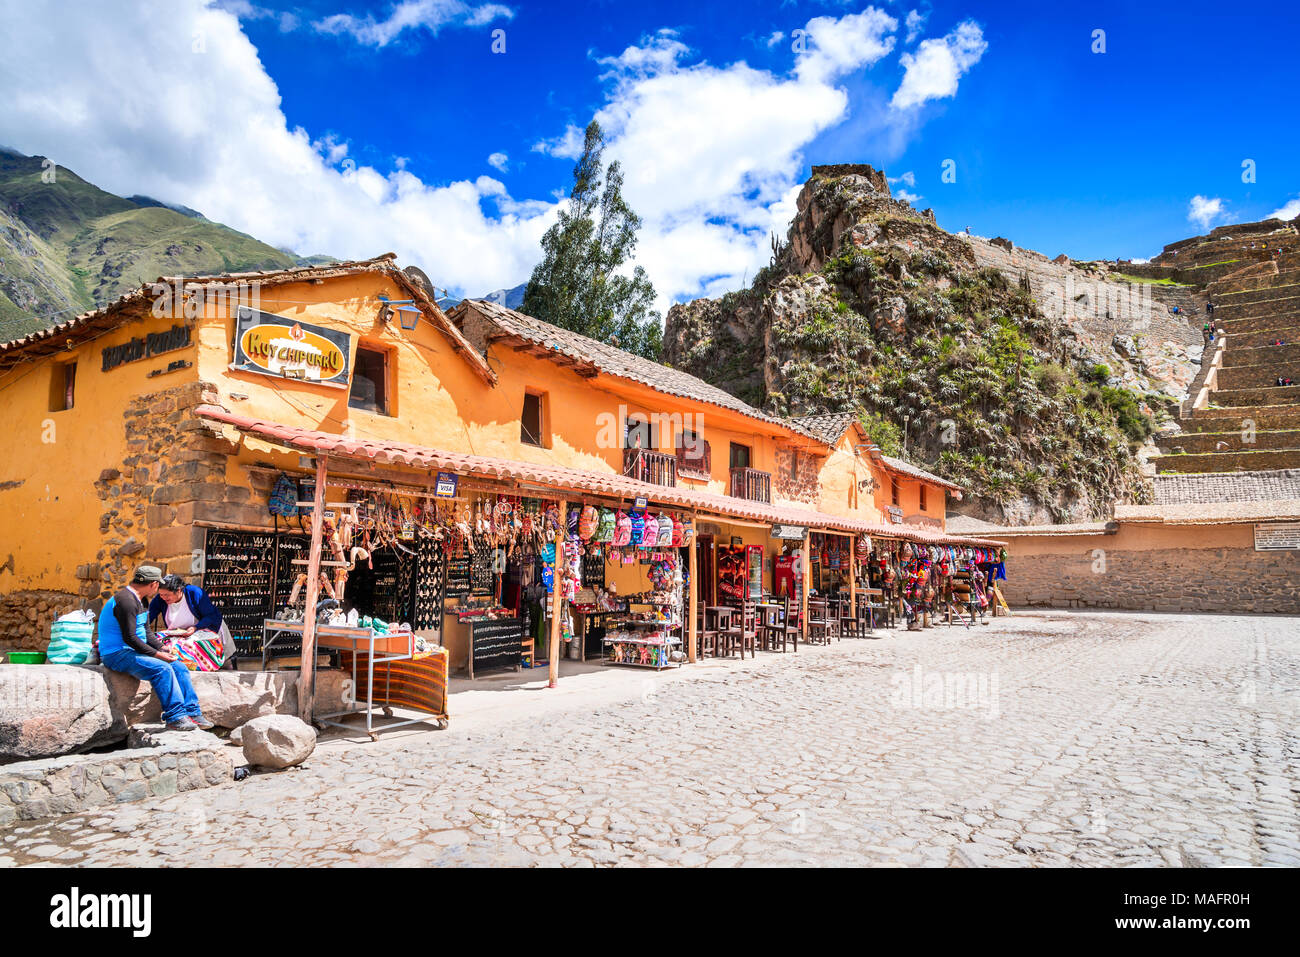 OLLANTAYTAMBO, PÉROU - 27 avril 2017 : le centre-ville de la petite ville médiévale d'Ollantaytambo, avec les ruines Inca sur les montagnes des Andes. Banque D'Images